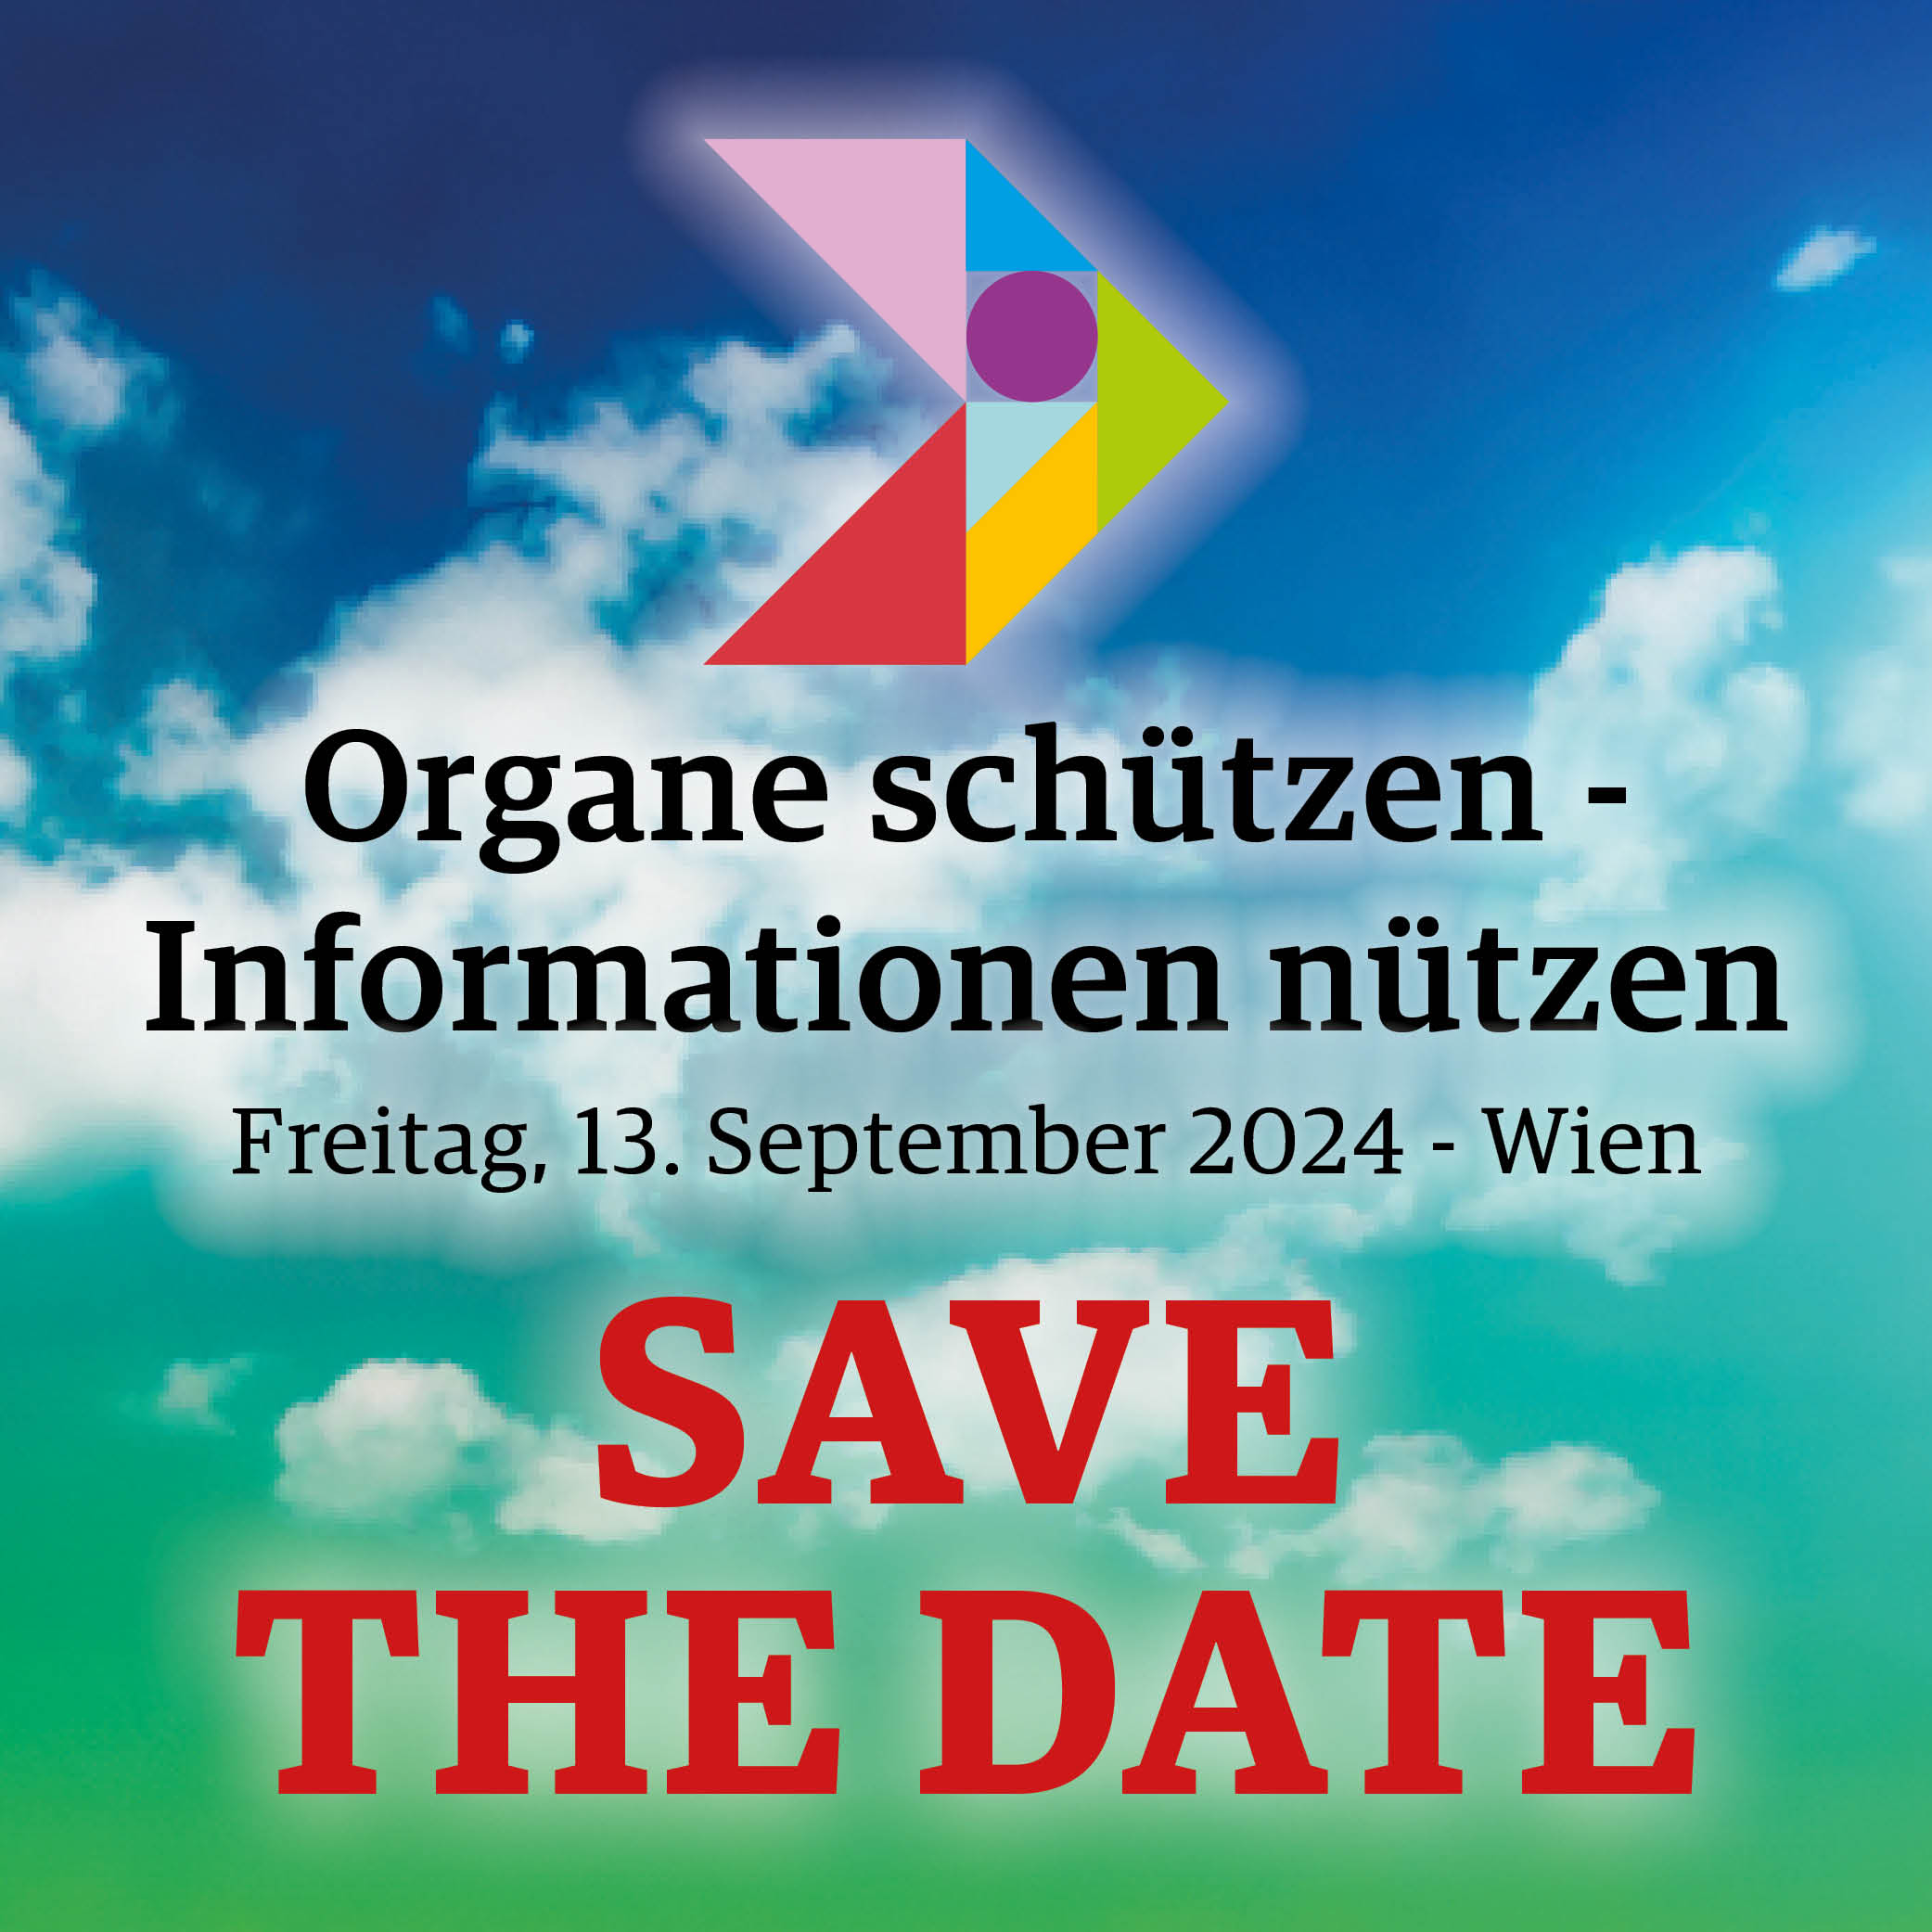 SAVE THE DATE! Organe schützen - Informationen nützen 2024